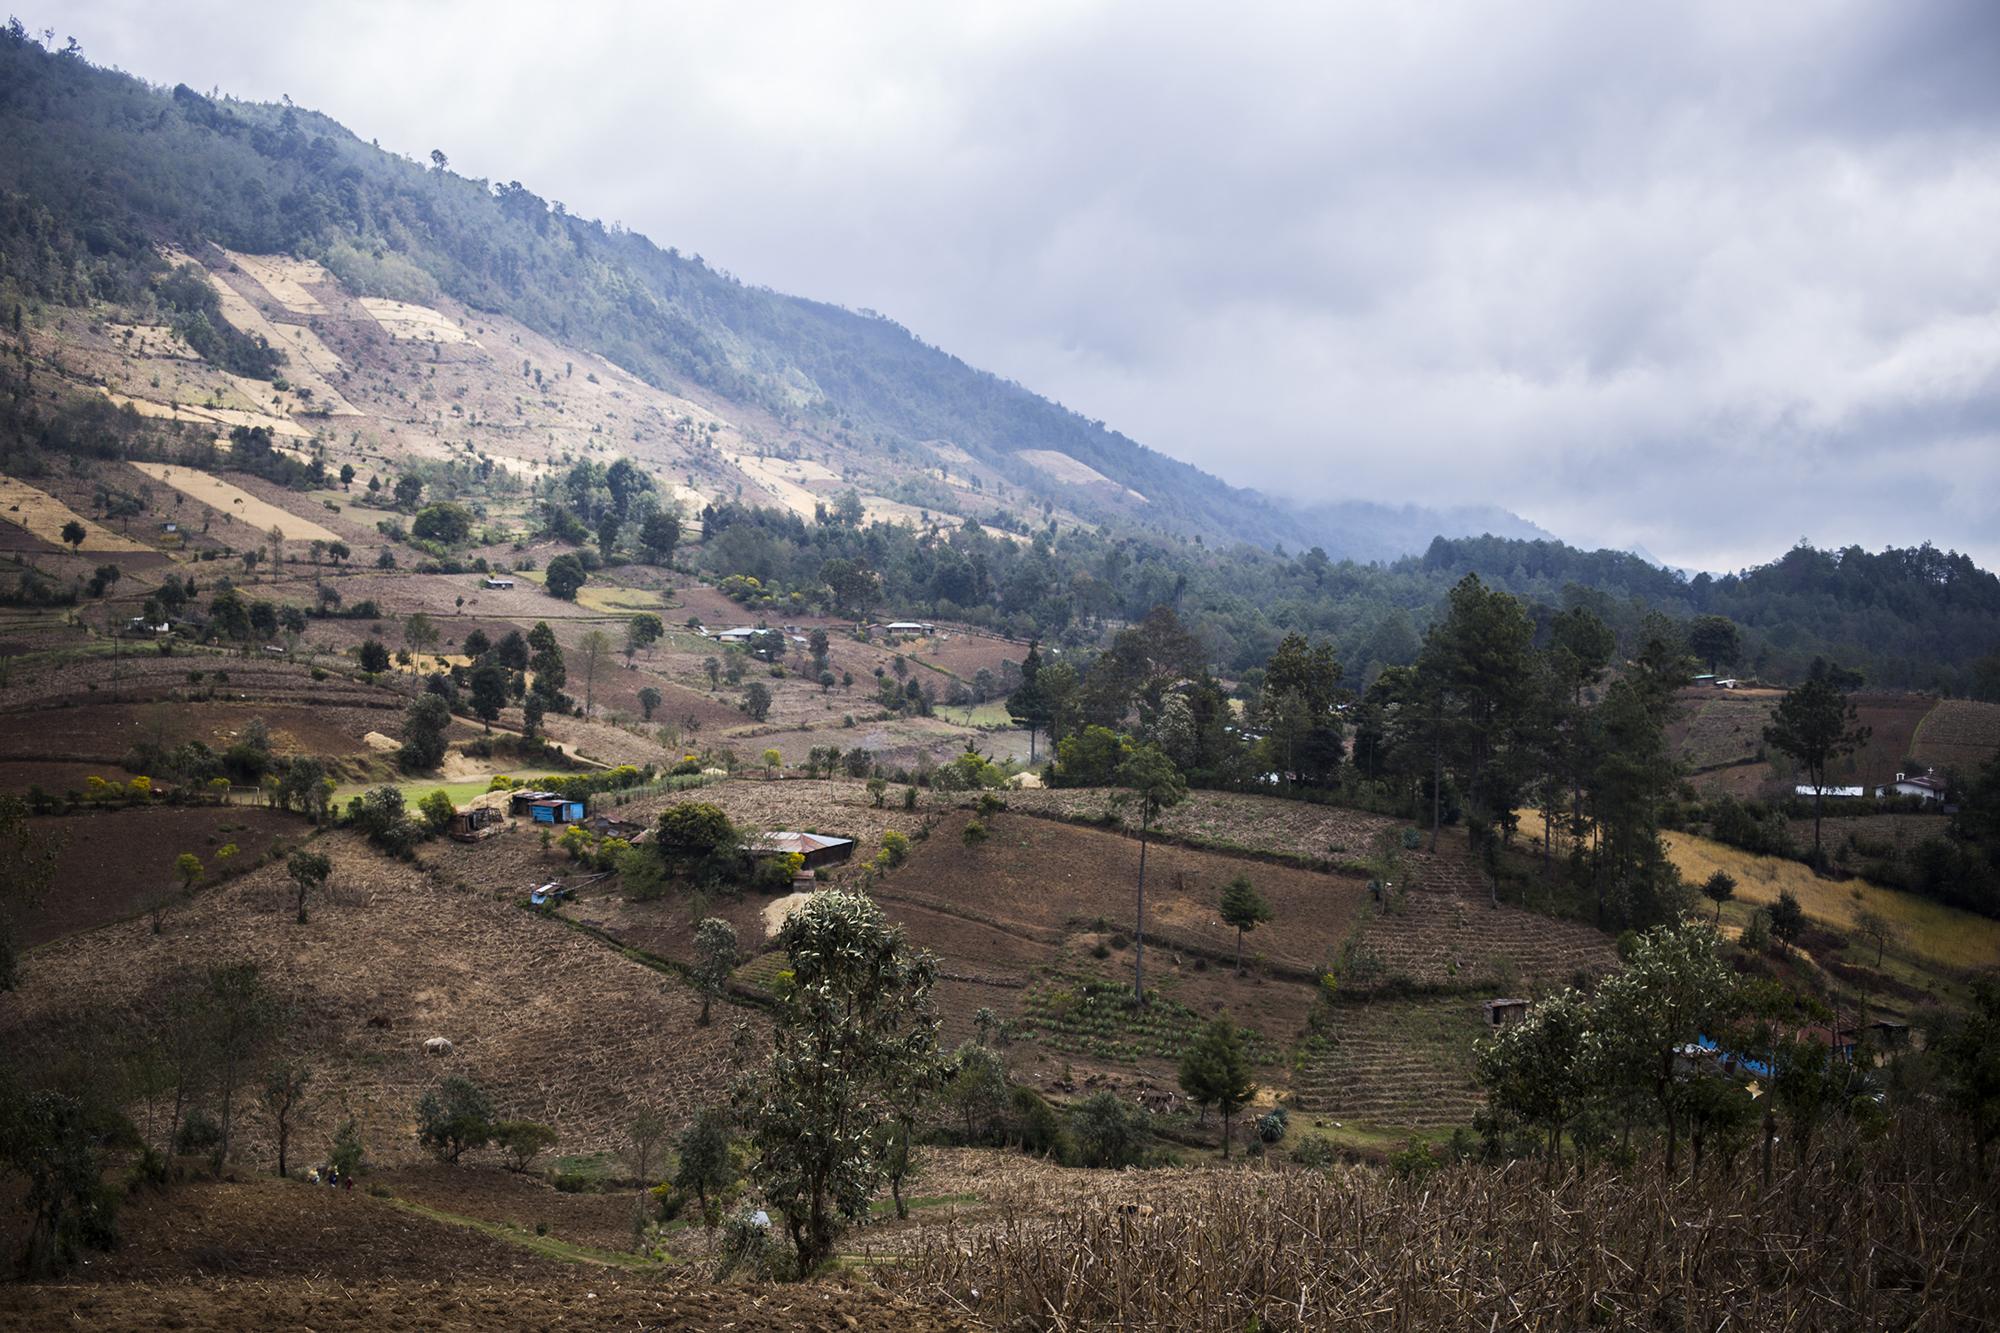 La región ixil está comprendida por los pueblos: Santa María Nebaj, San Gaspar Chajul y San Juan Cotzal. Sus aldeas, las que sufrieron las peores masacres, son remotas, y se refugian entre las praderas. Son casas de madera entre cultivos. Esos pueblos están ubicados a 300 kilómetros de la Ciudad de Guatemala.